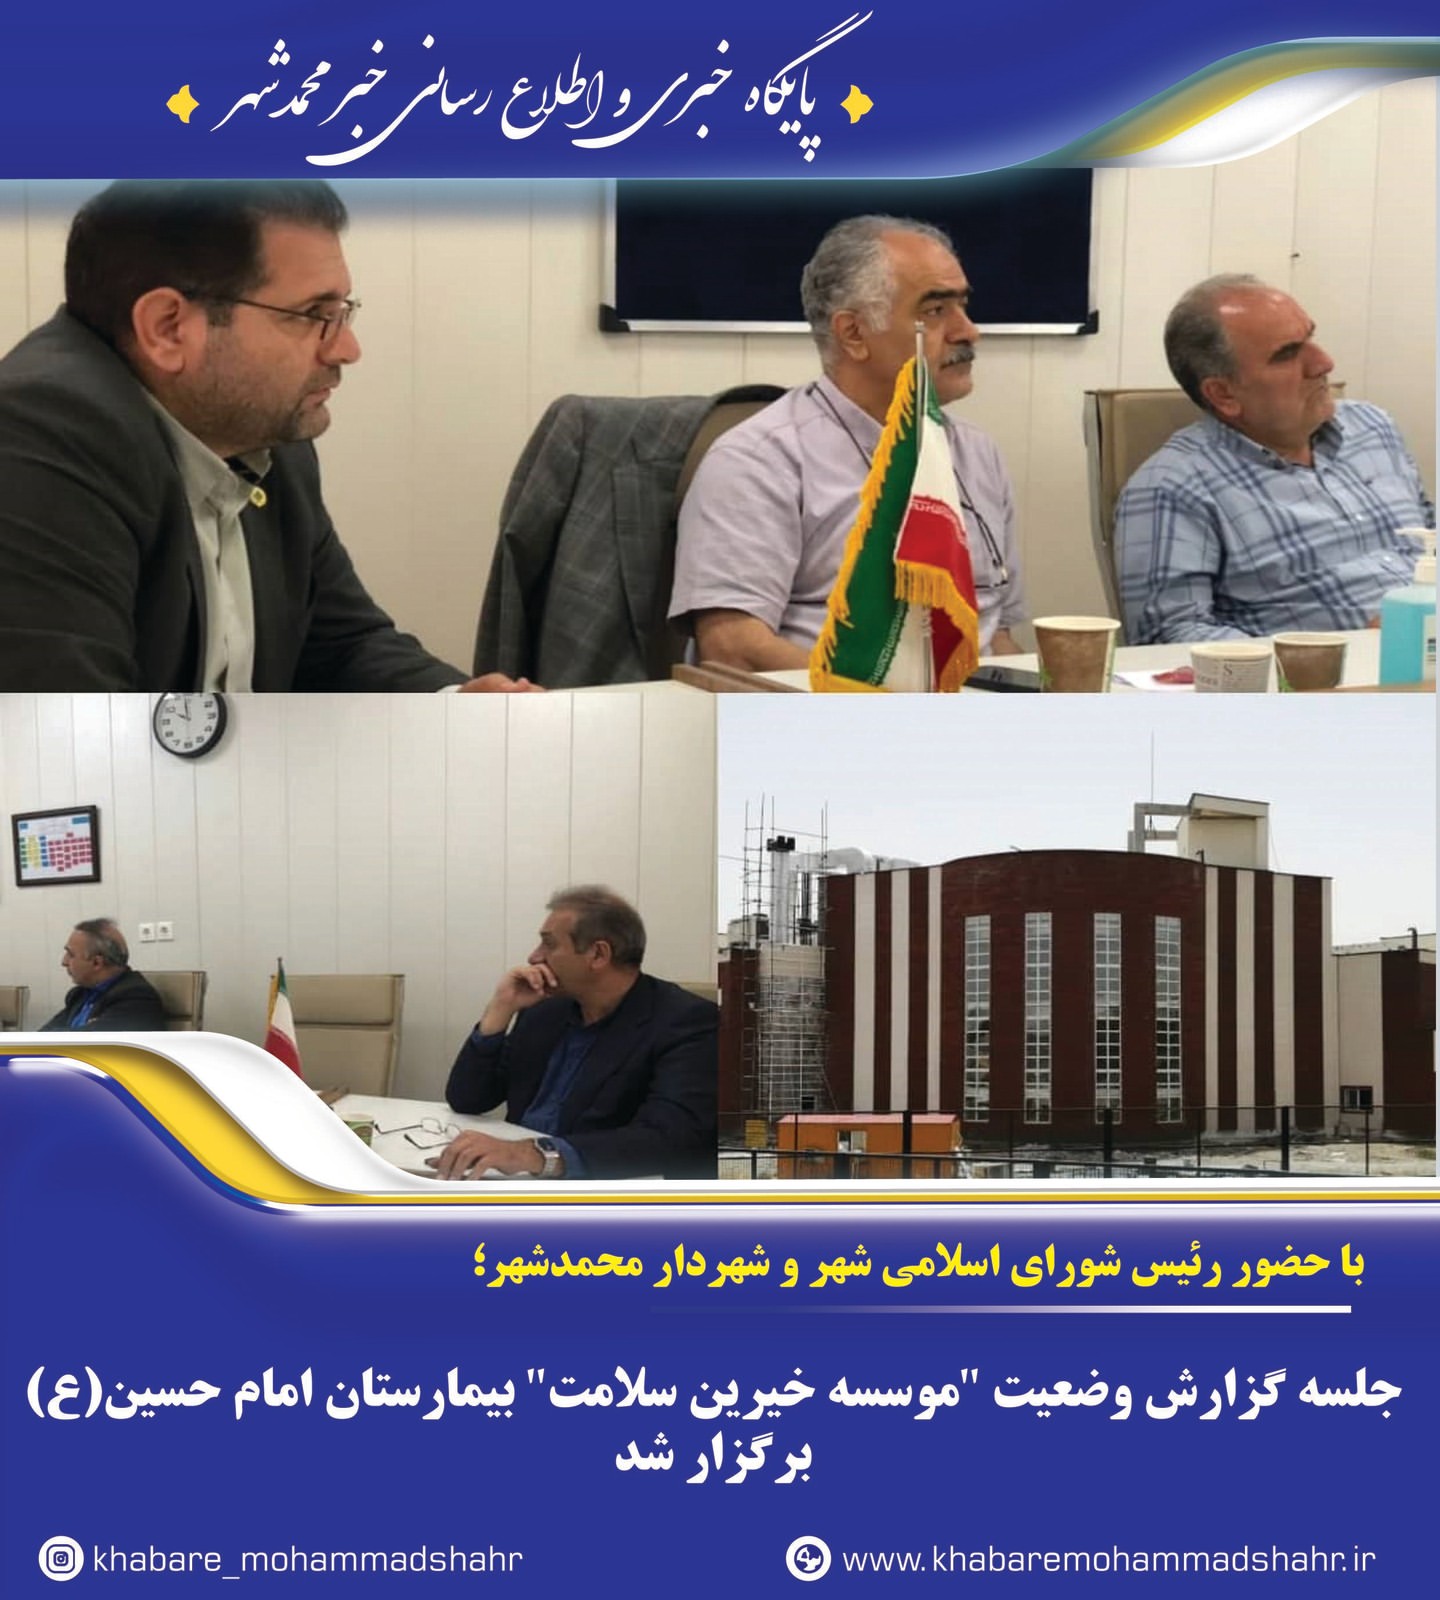 جلسه گزارش وضعیت "موسسه خیرین سلامت" بیمارستان امام حسین(ع) برگزار شد